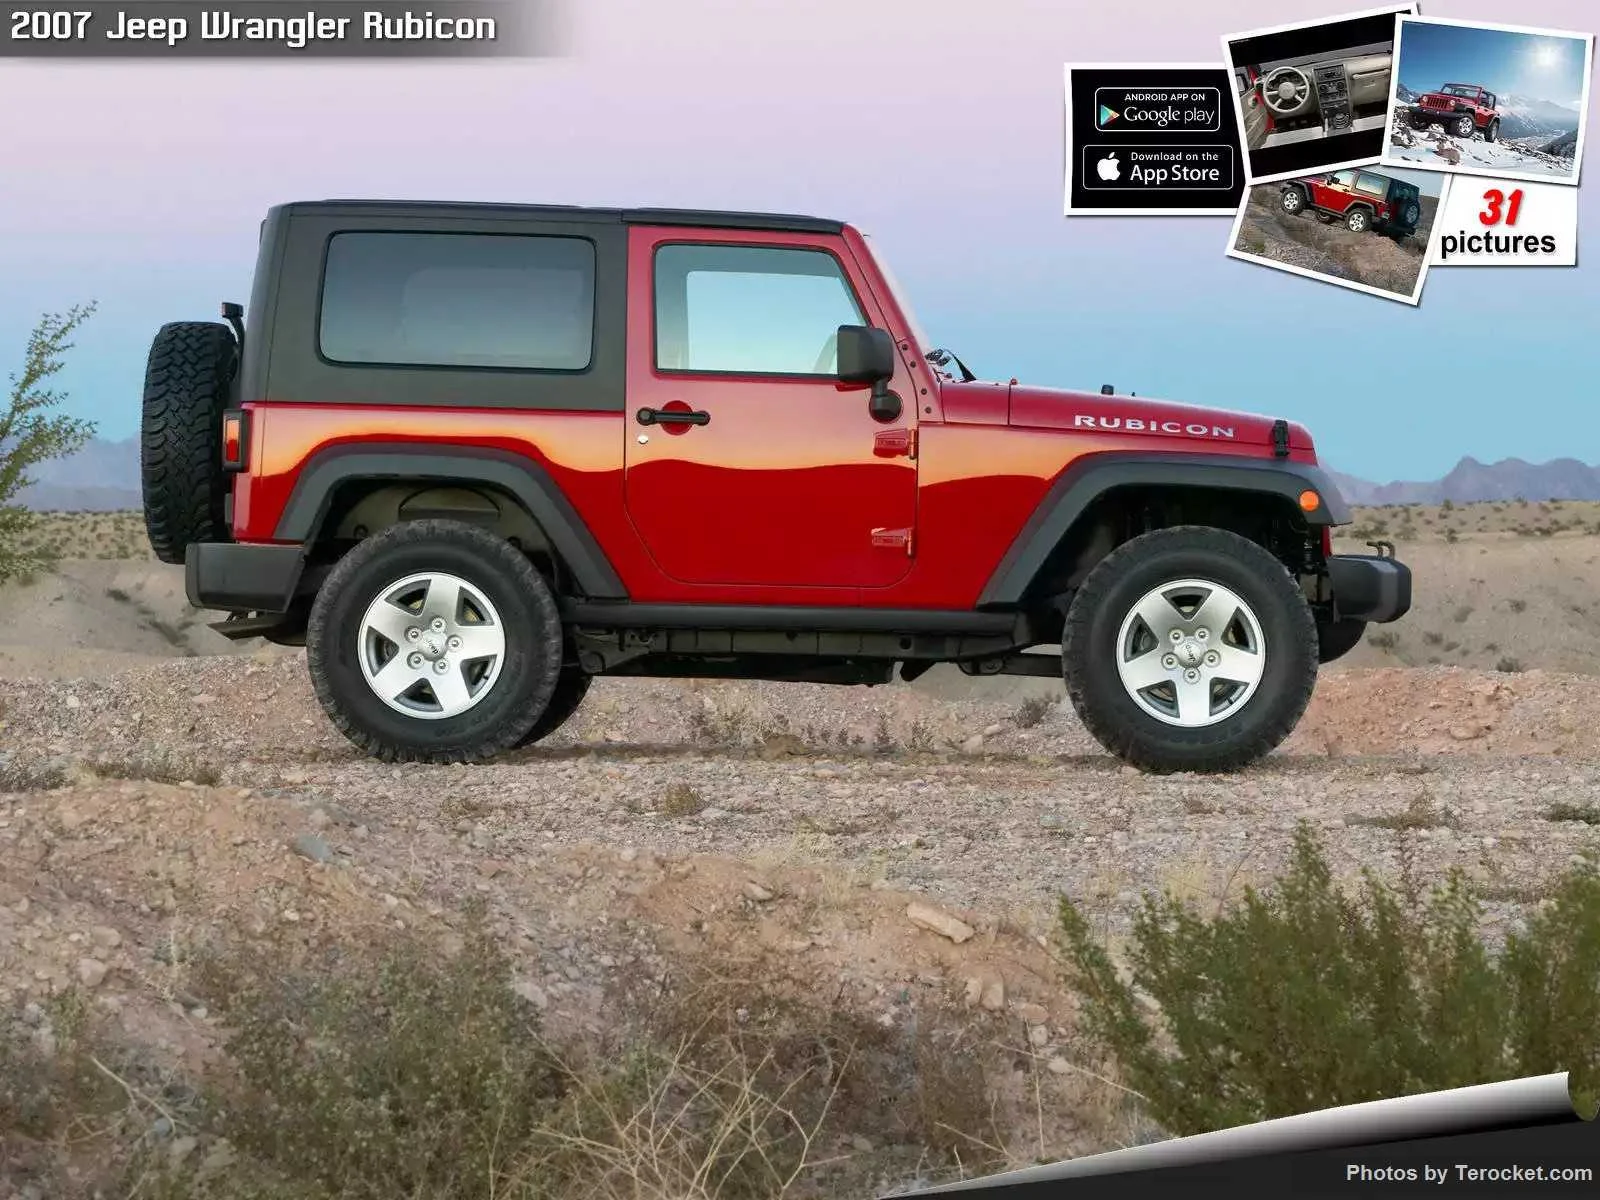 Hình ảnh xe ô tô Jeep Wrangler Rubicon 2007 & nội ngoại thất